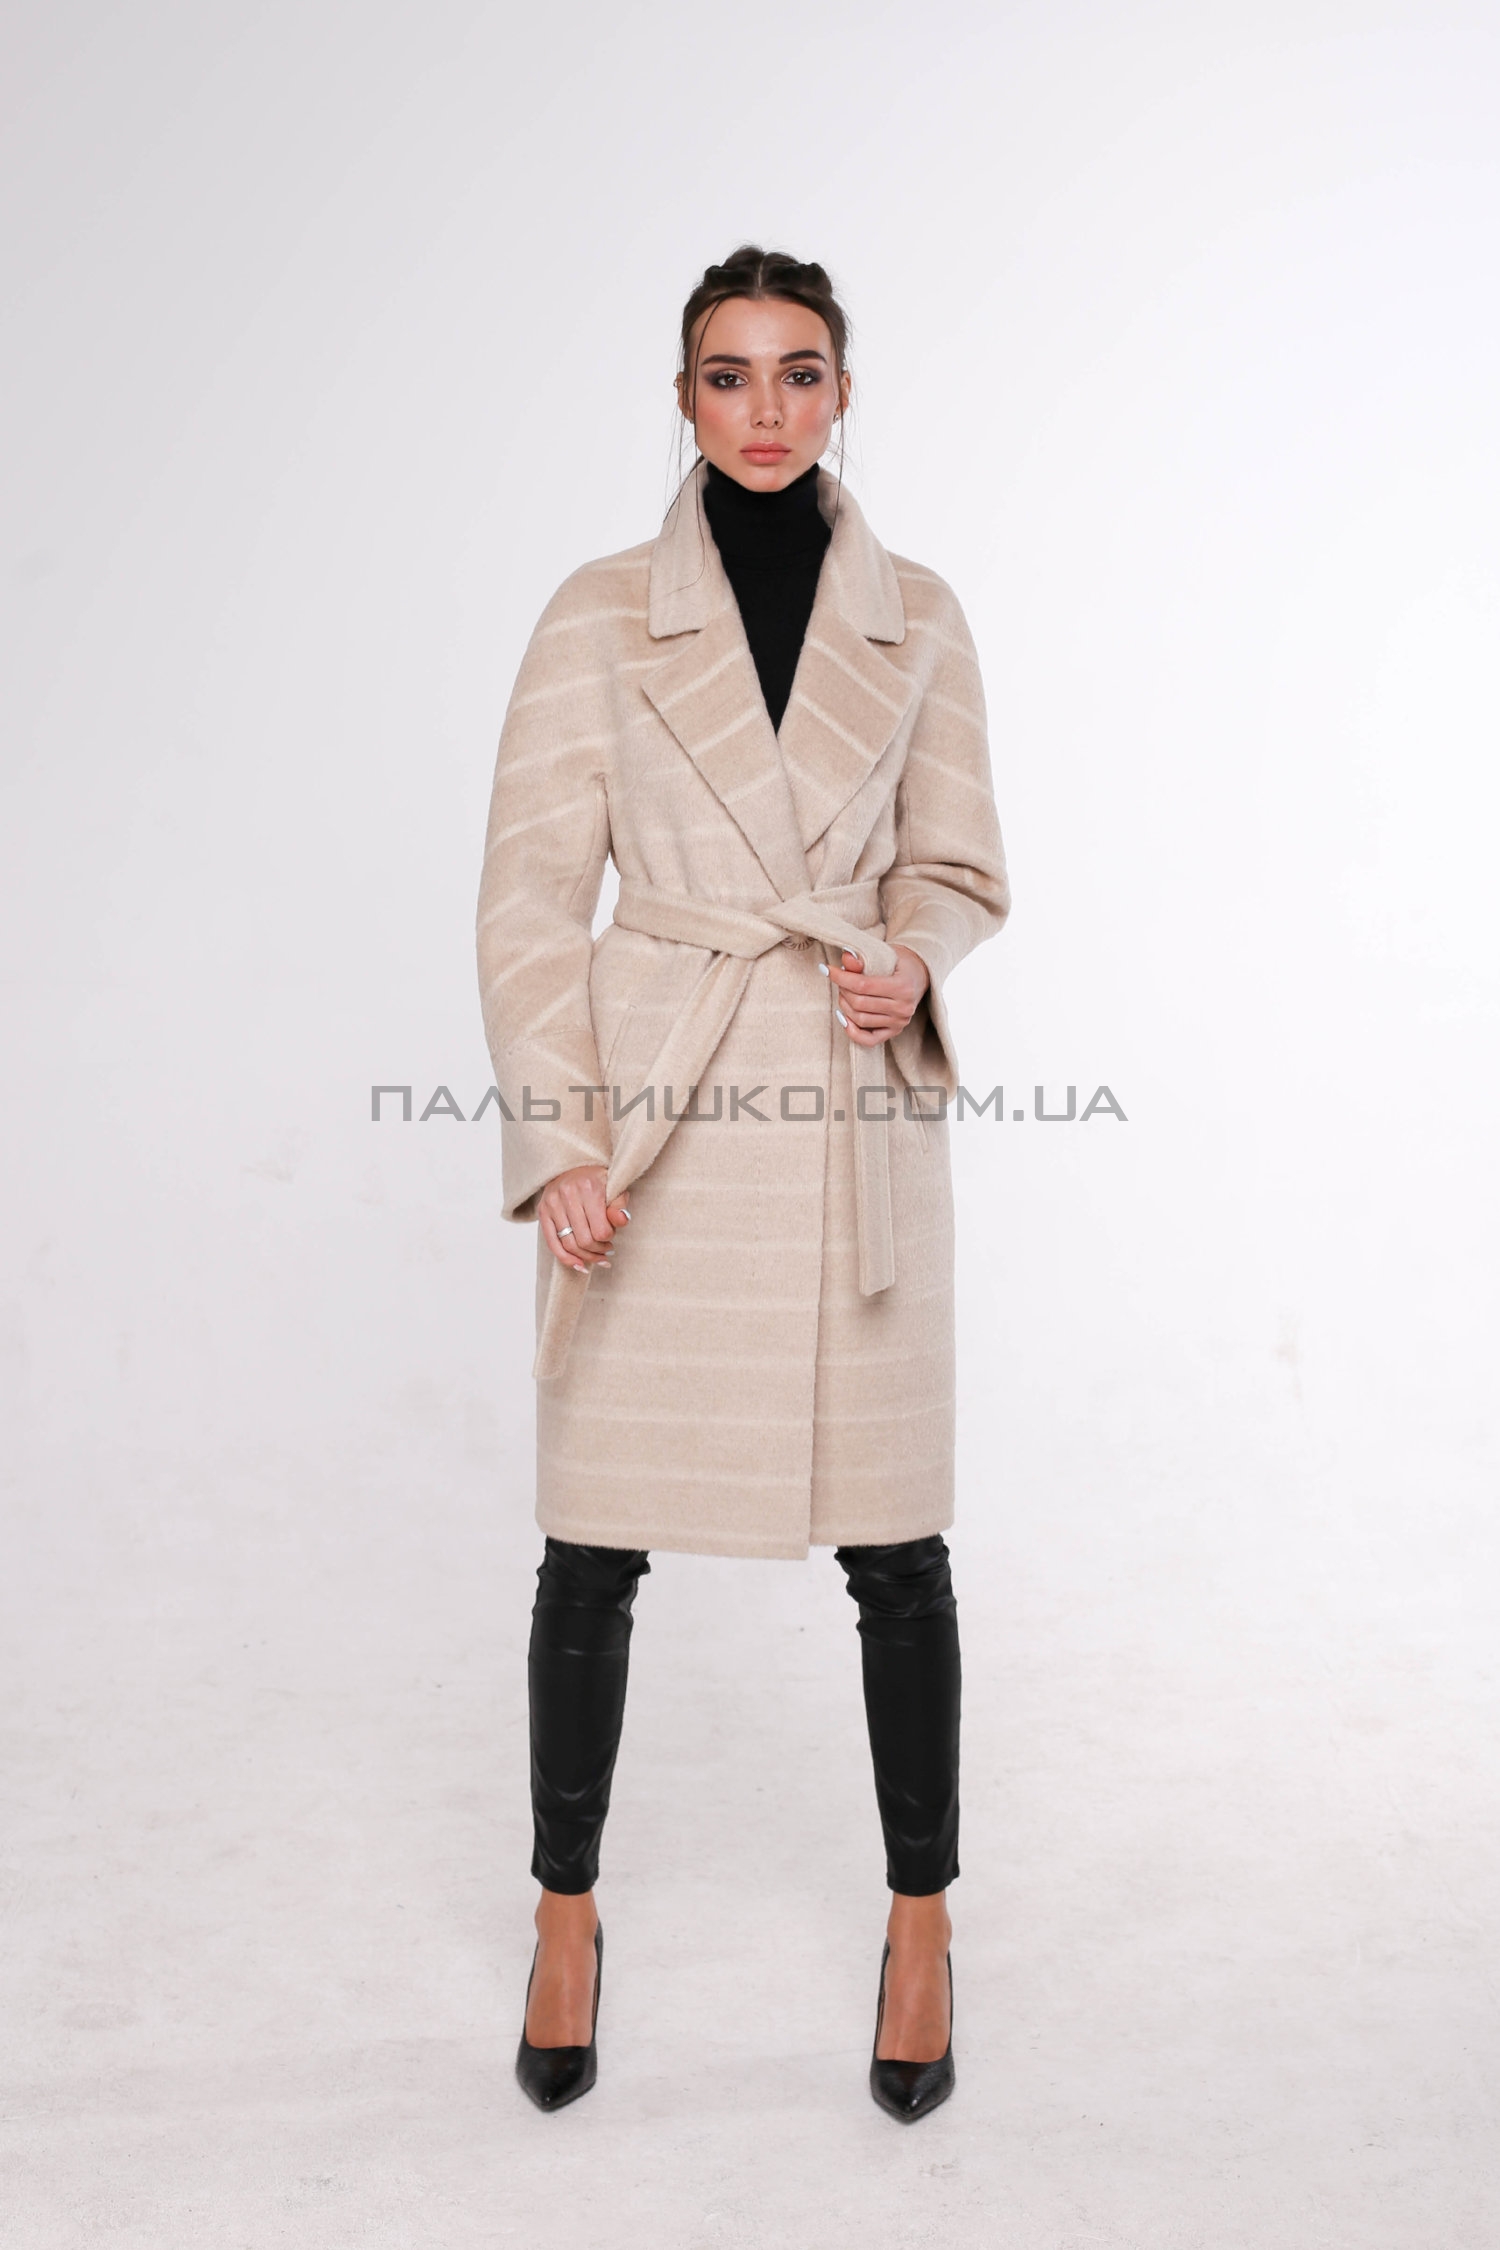  Жіноче пальто № 119